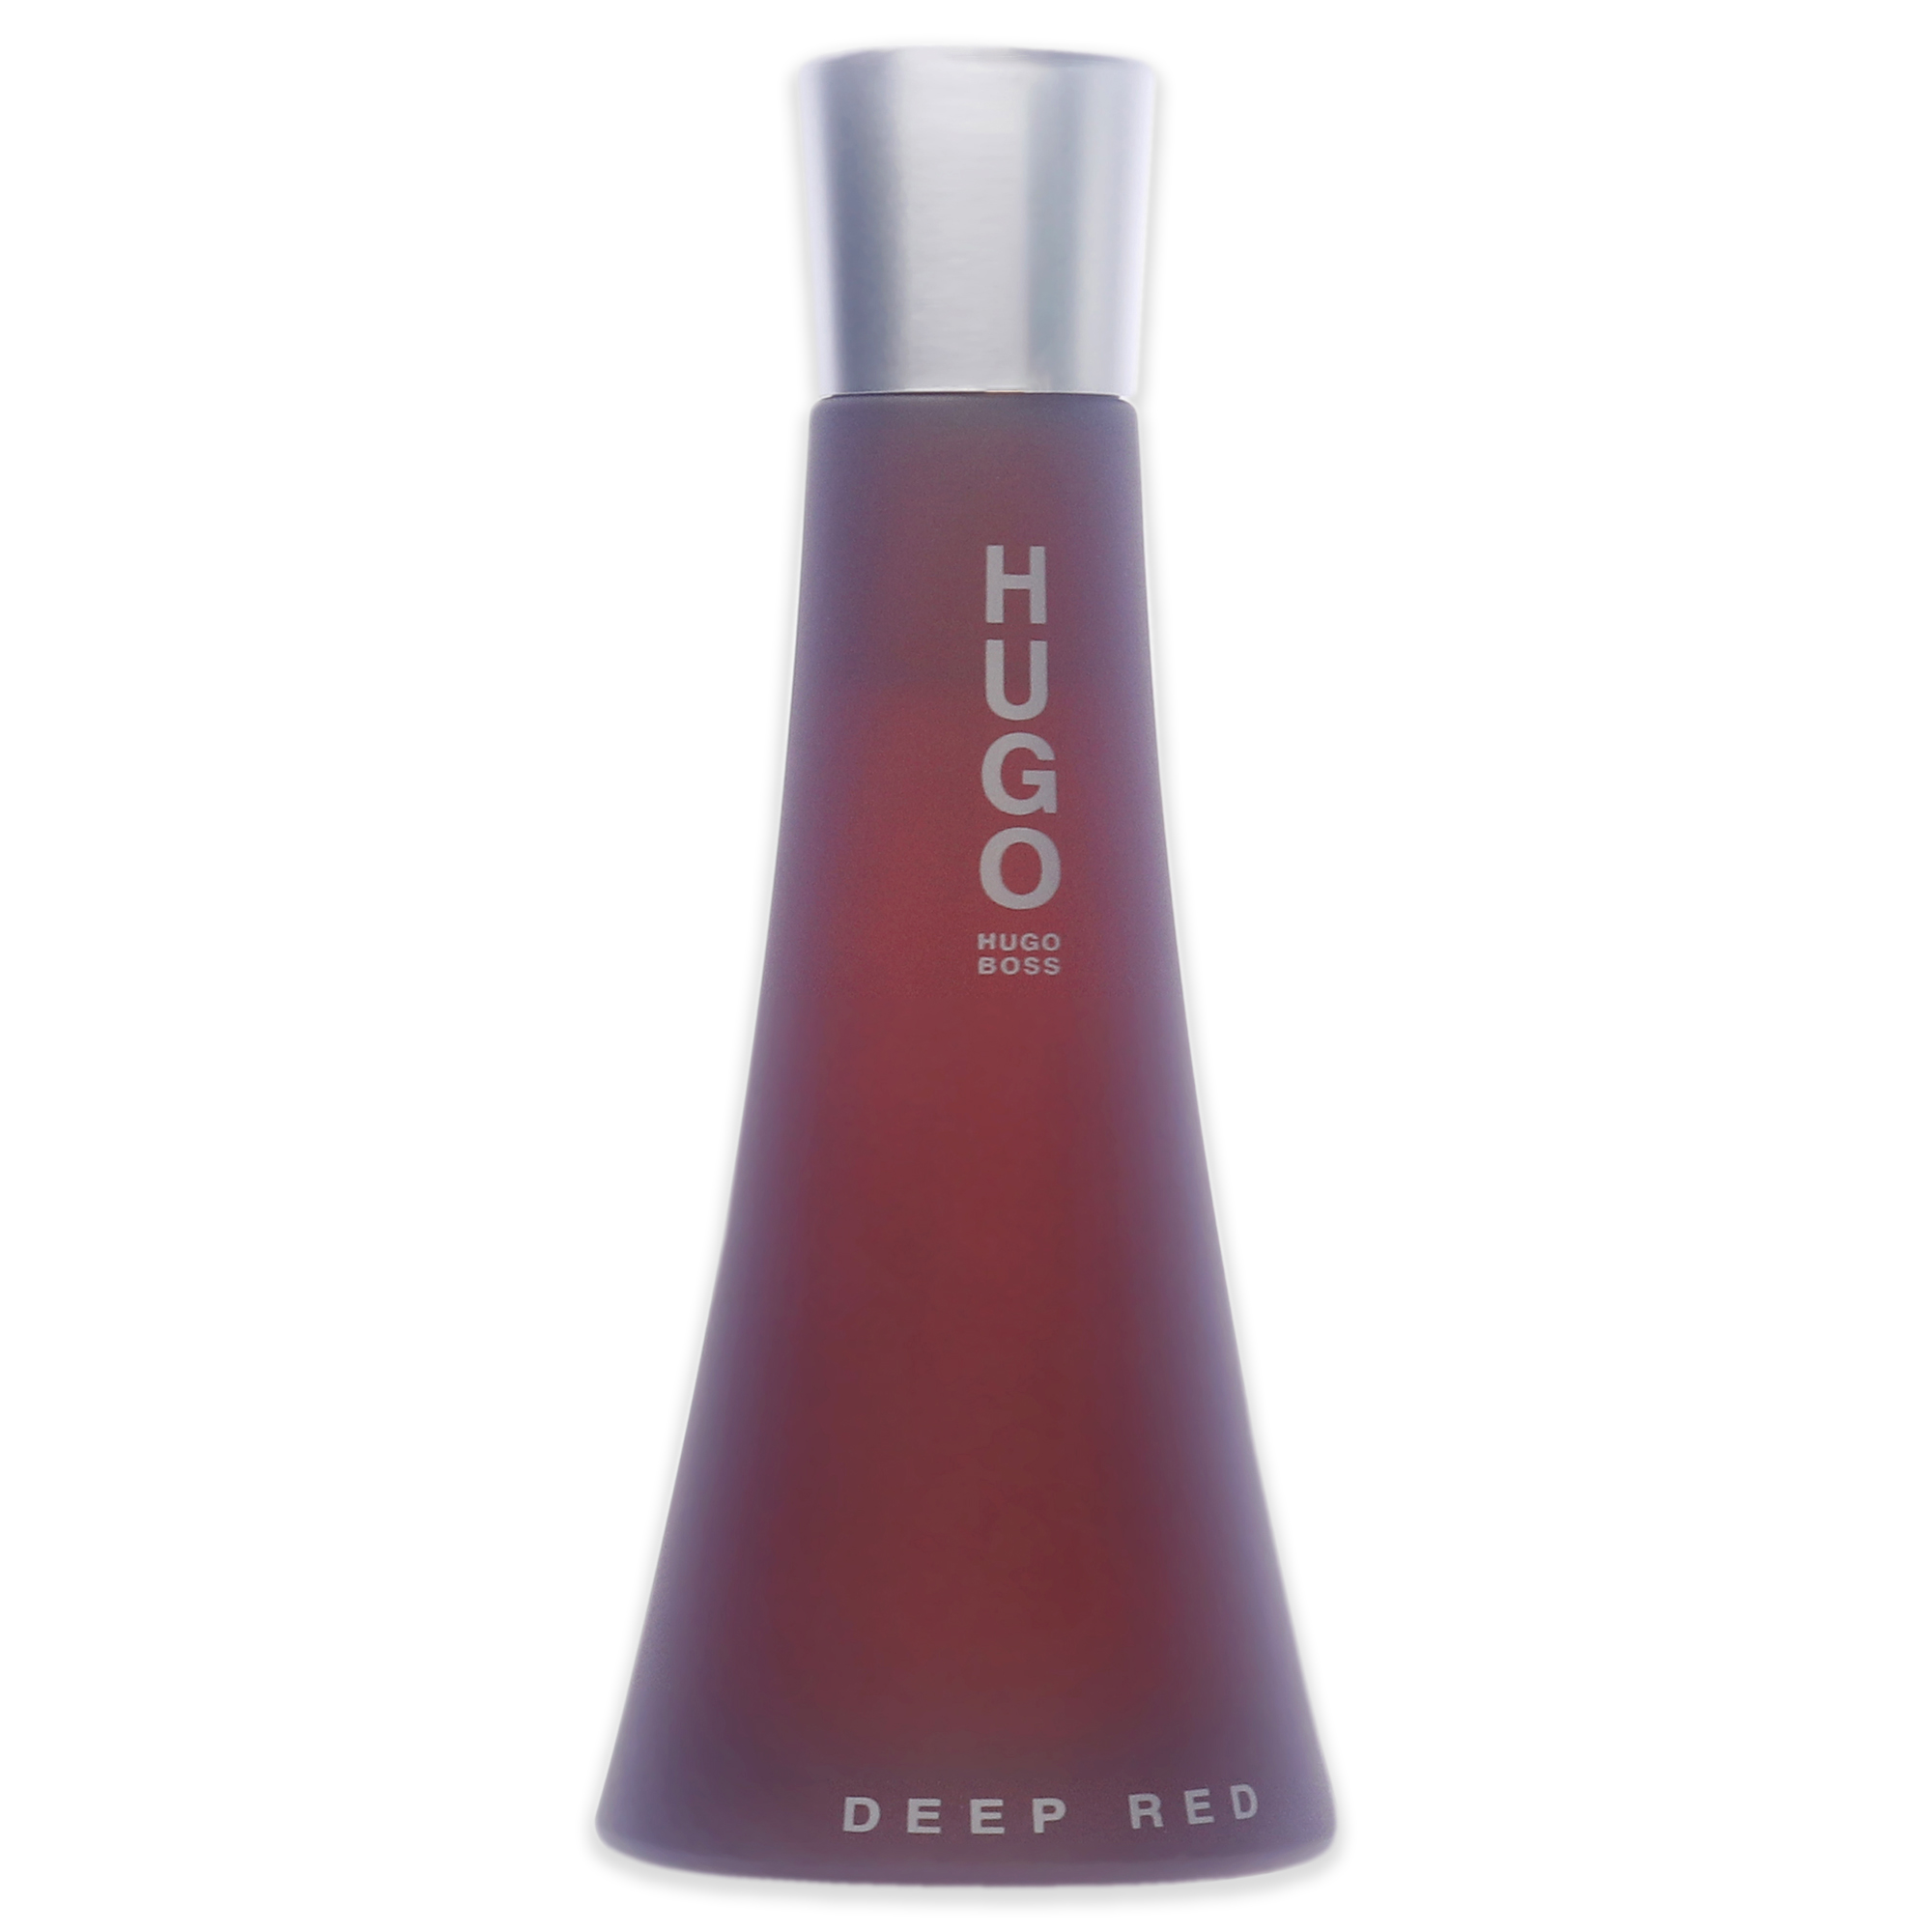 Hugo Boss Deep Red Eau de Parfum, Perfume for Women, 3 oz - image 2 of 6